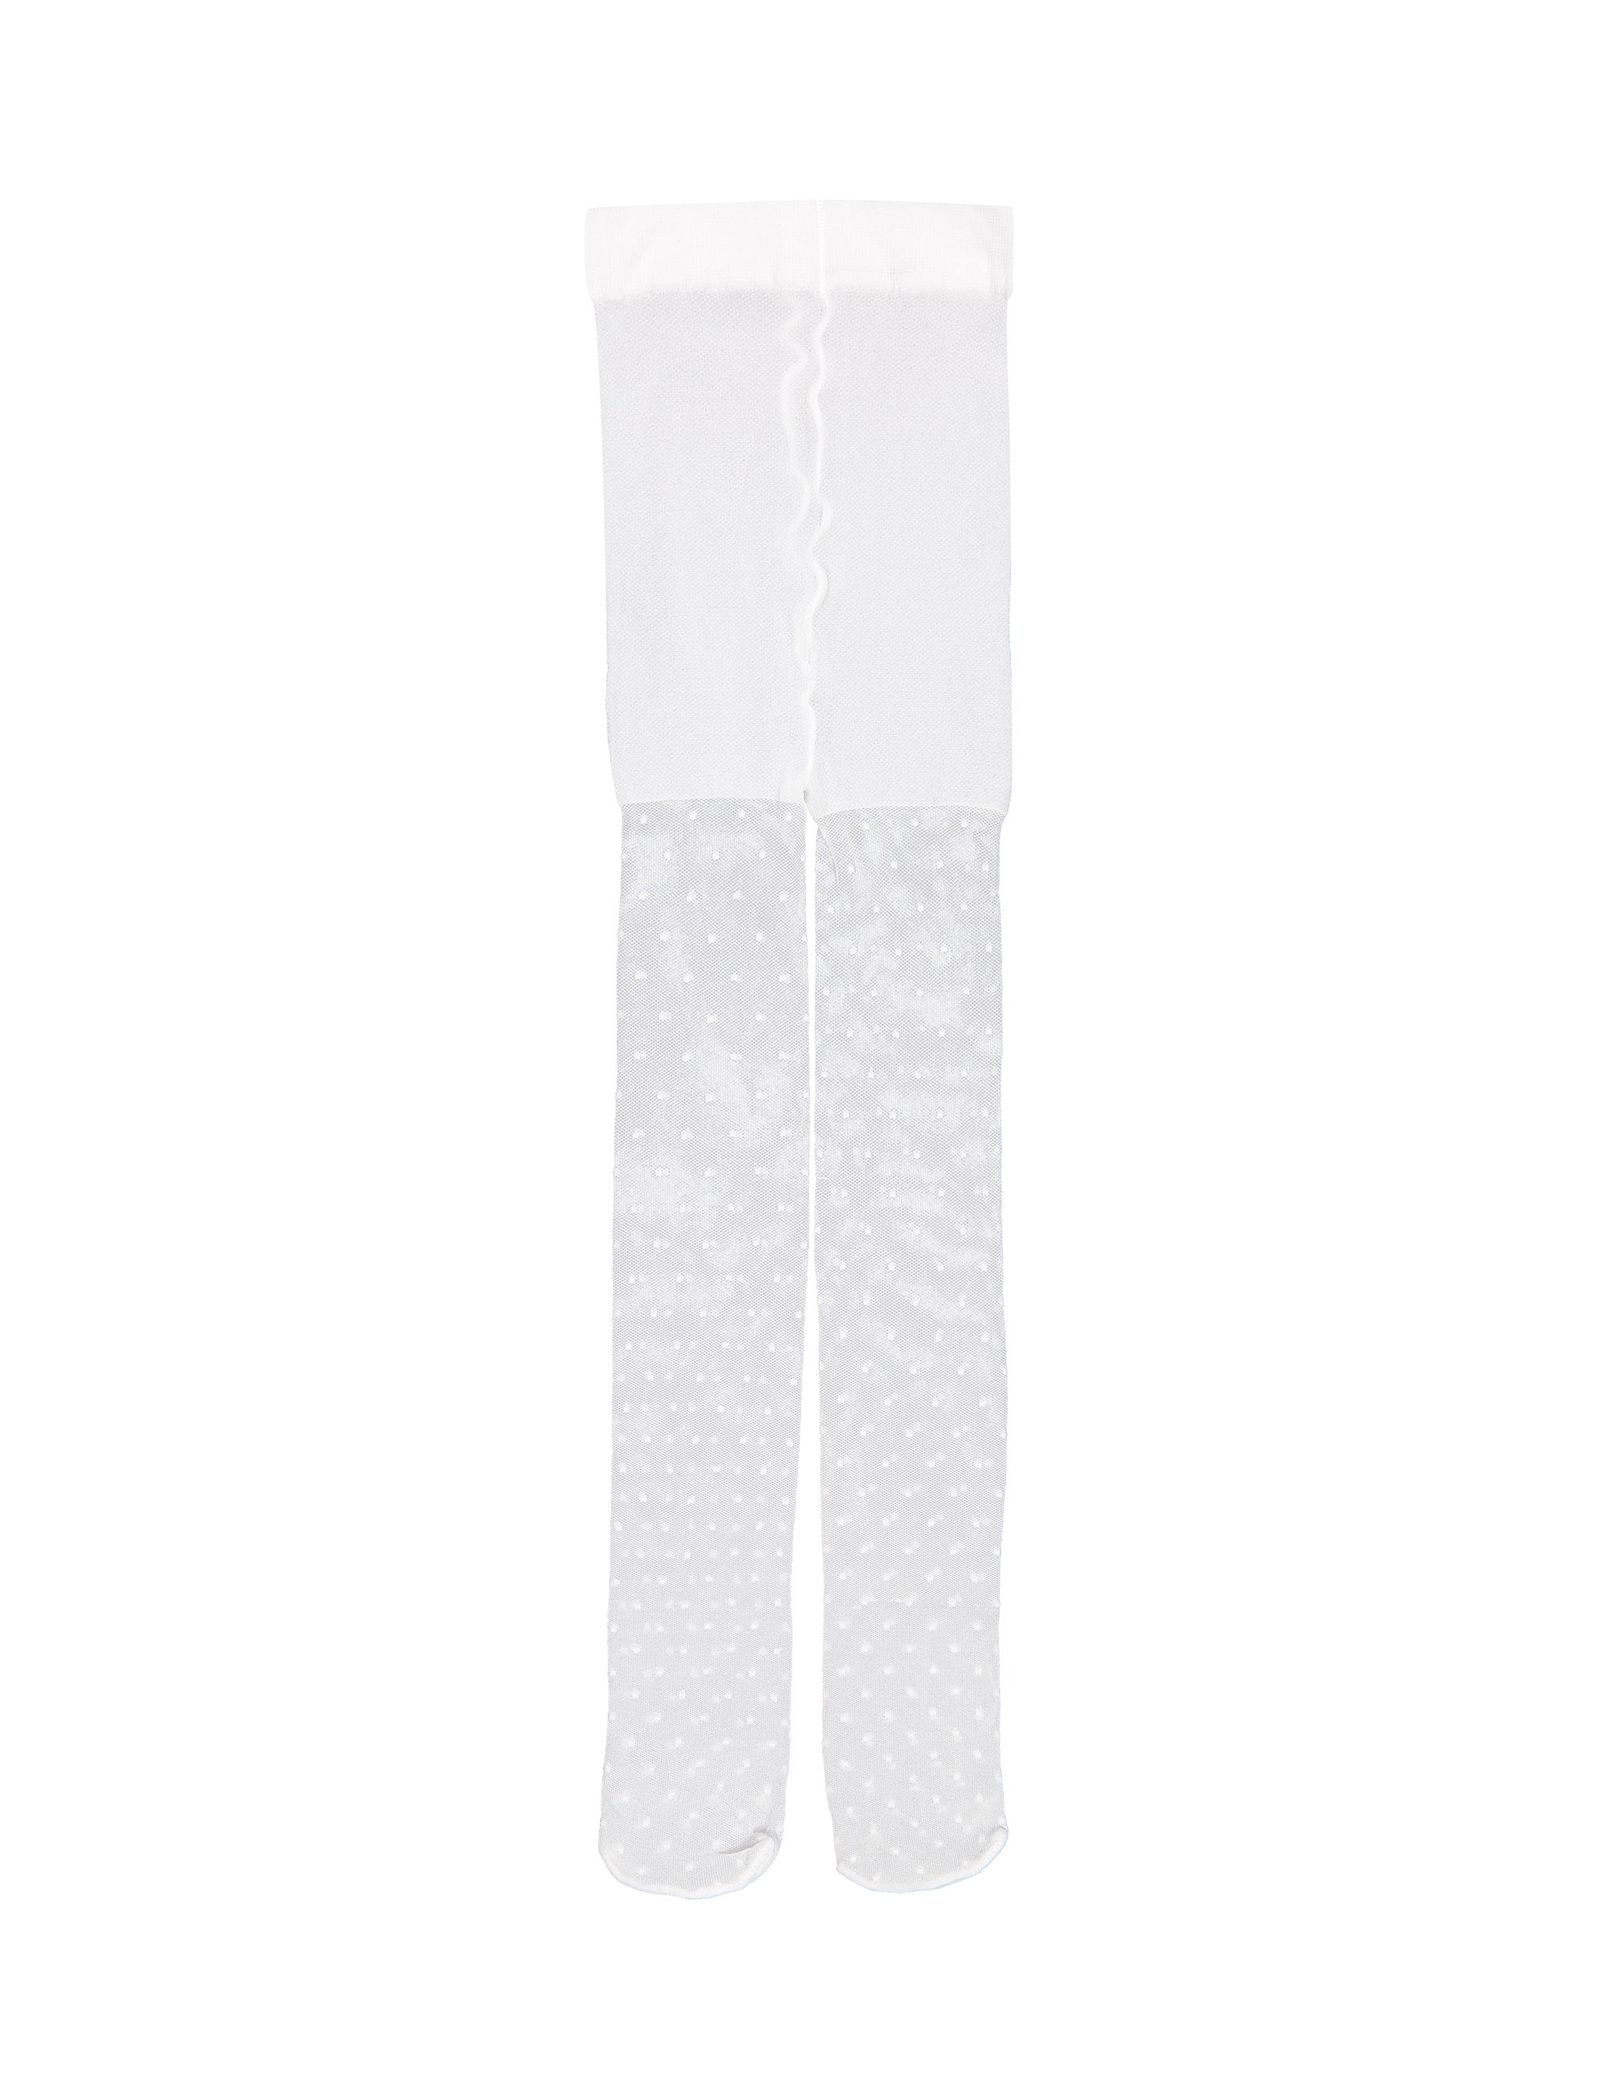 جوراب شلواری طرح دار دخترانه - ایدکس - سفيد - 2